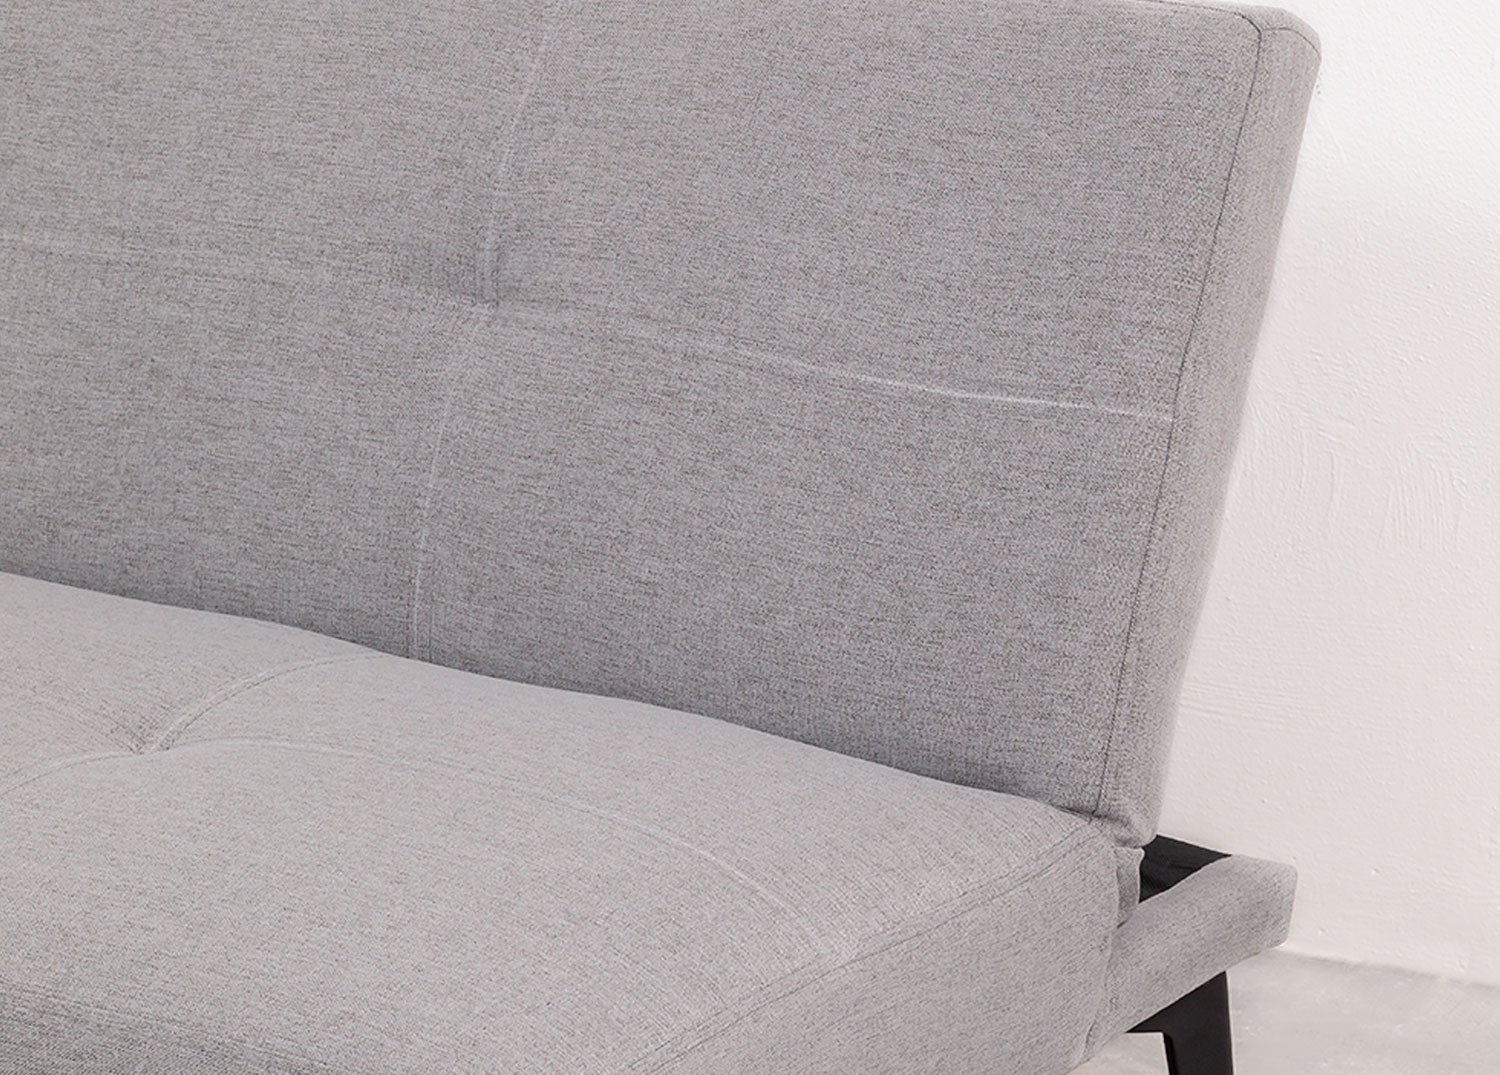 2 Seater Reclining Sofa in Aruba Fabric, gallery image 2